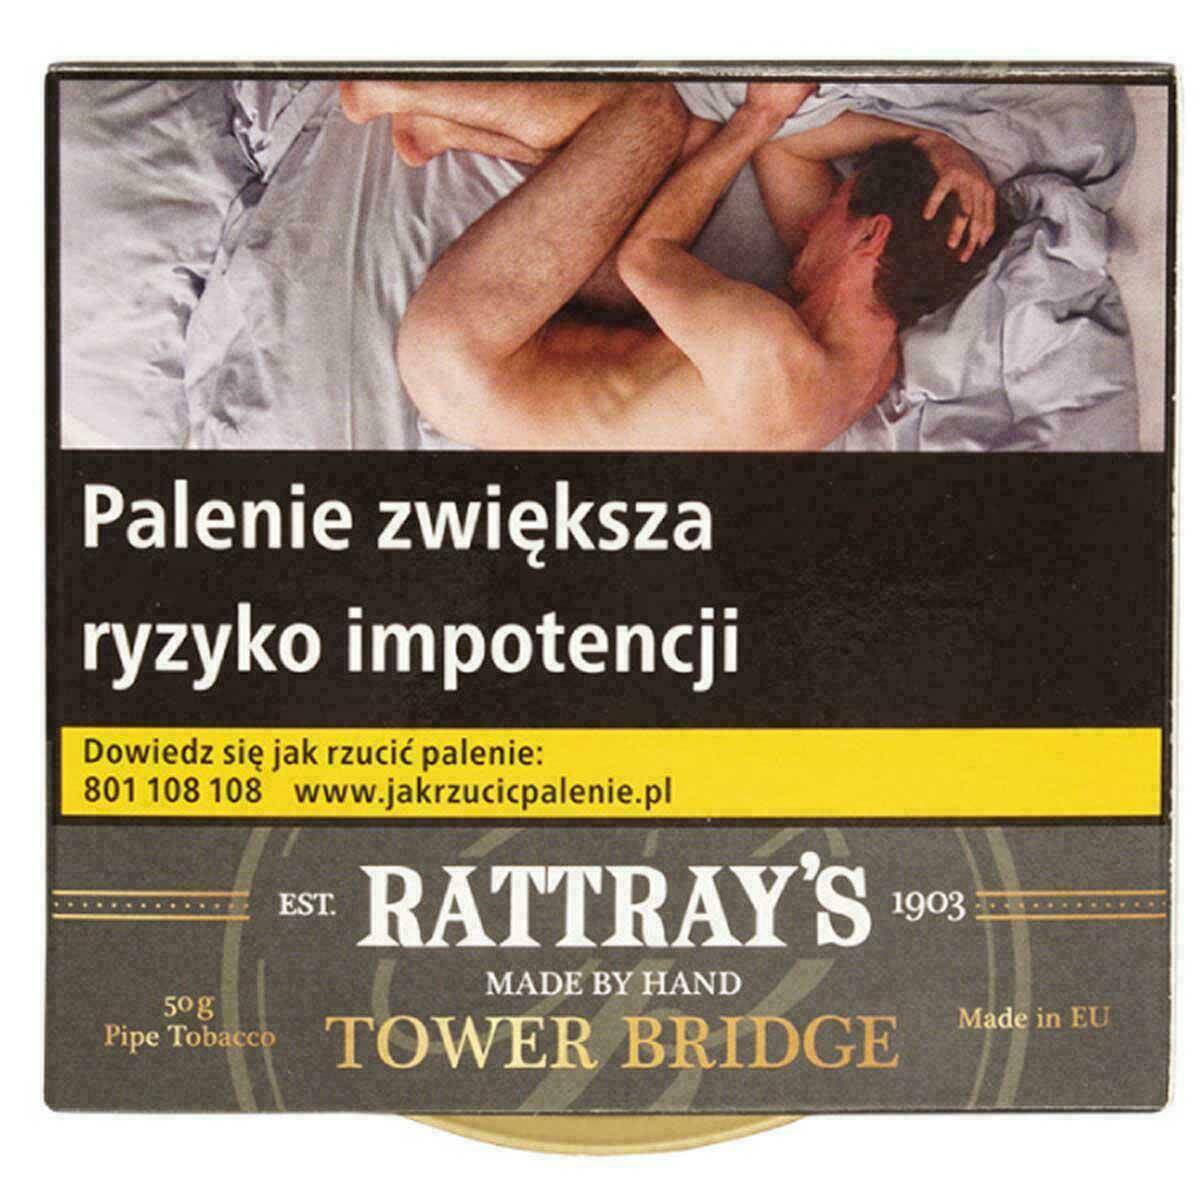 Tytoń Rattray Tower Bridge 50g (79,90)